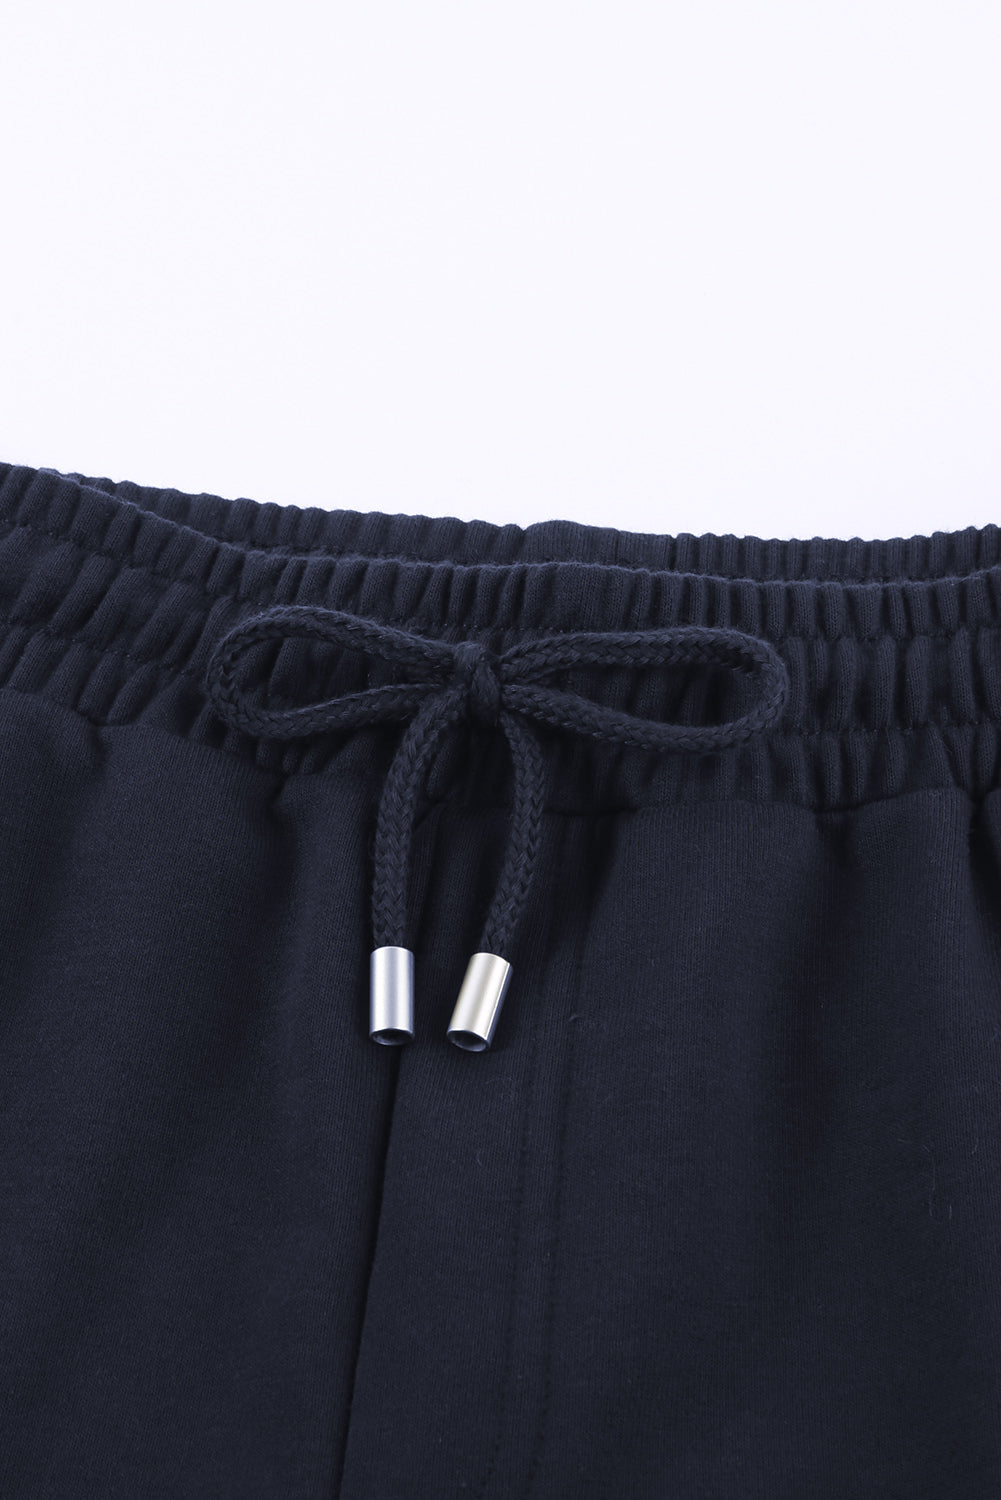 Shorts con cintura con cordón y puños